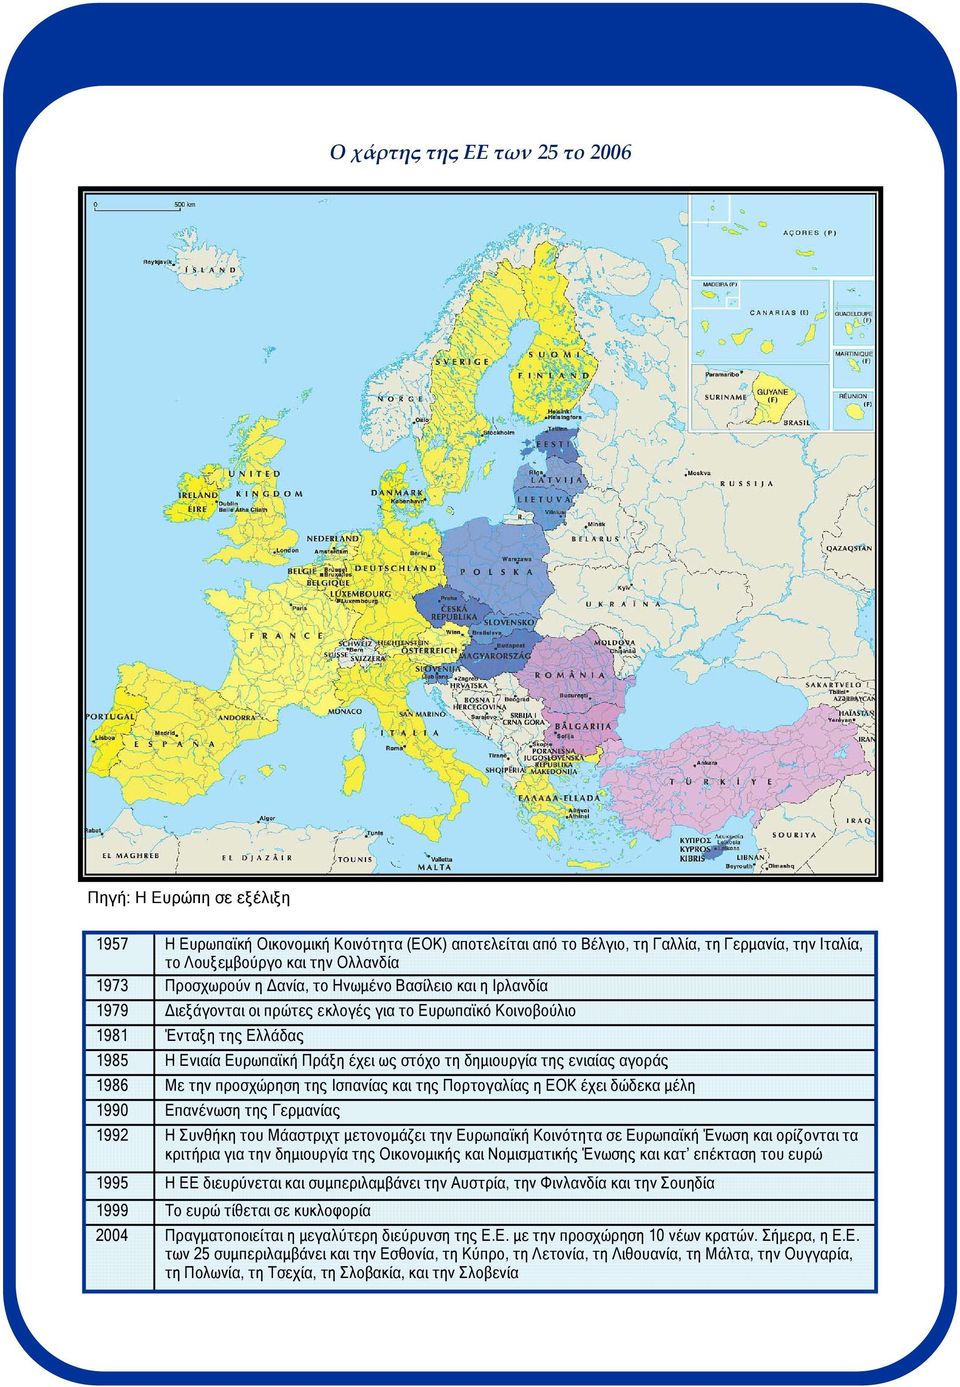 δηµιουργία της ενιαίας αγοράς 1986 Με την προσχώρηση της Ισπανίας και της Πορτογαλίας η ΕΟΚ έχει δώδεκα µέλη 1990 Επανένωση της Γερµανίας 1992 Η Συνθήκη του Μάαστριχτ µετονοµάζει την Ευρωπαϊκή